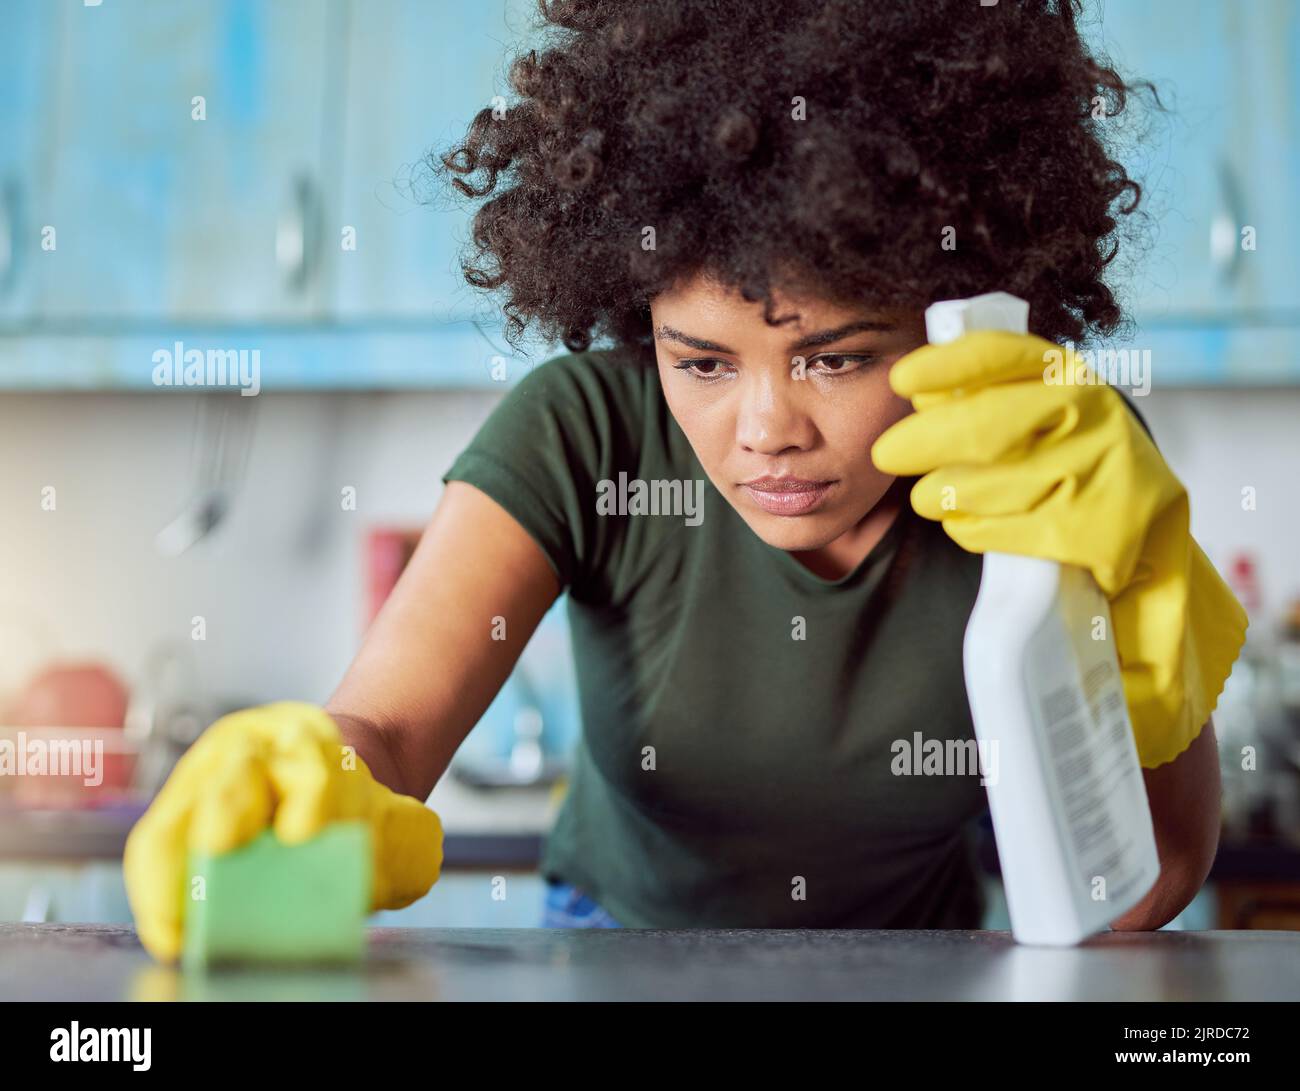 Ich vermisste einen Platz. Eine attraktive junge Frau mit gelben Handschuhen, die ihr Zuhause putzte. Stockfoto